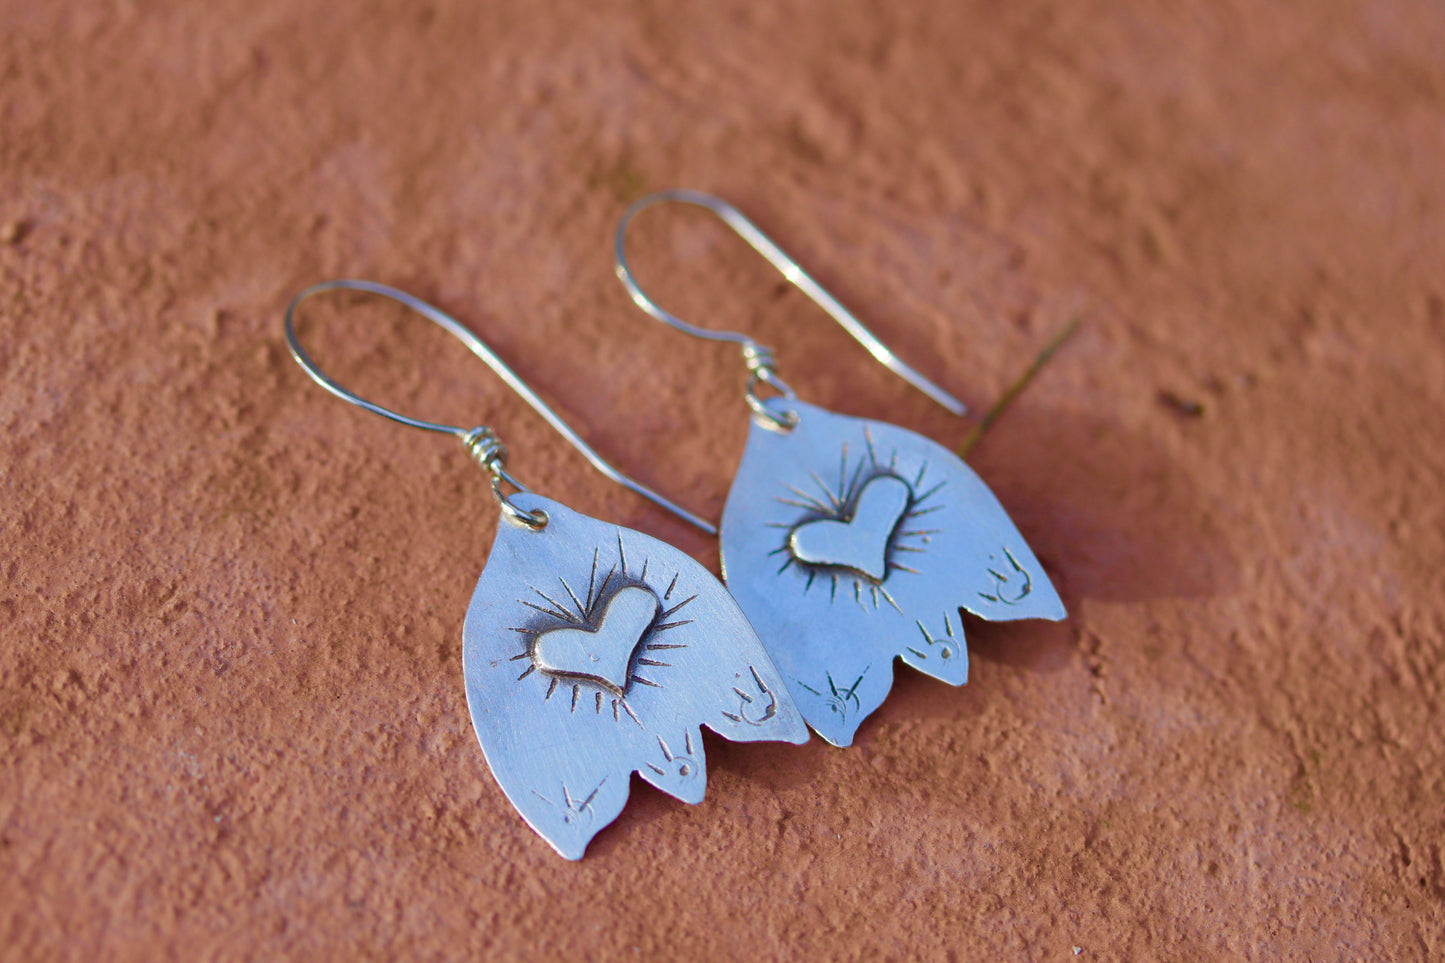 folk flower earrings folk art folk jewelry sterling silver folk flower earrings heart flower earrings